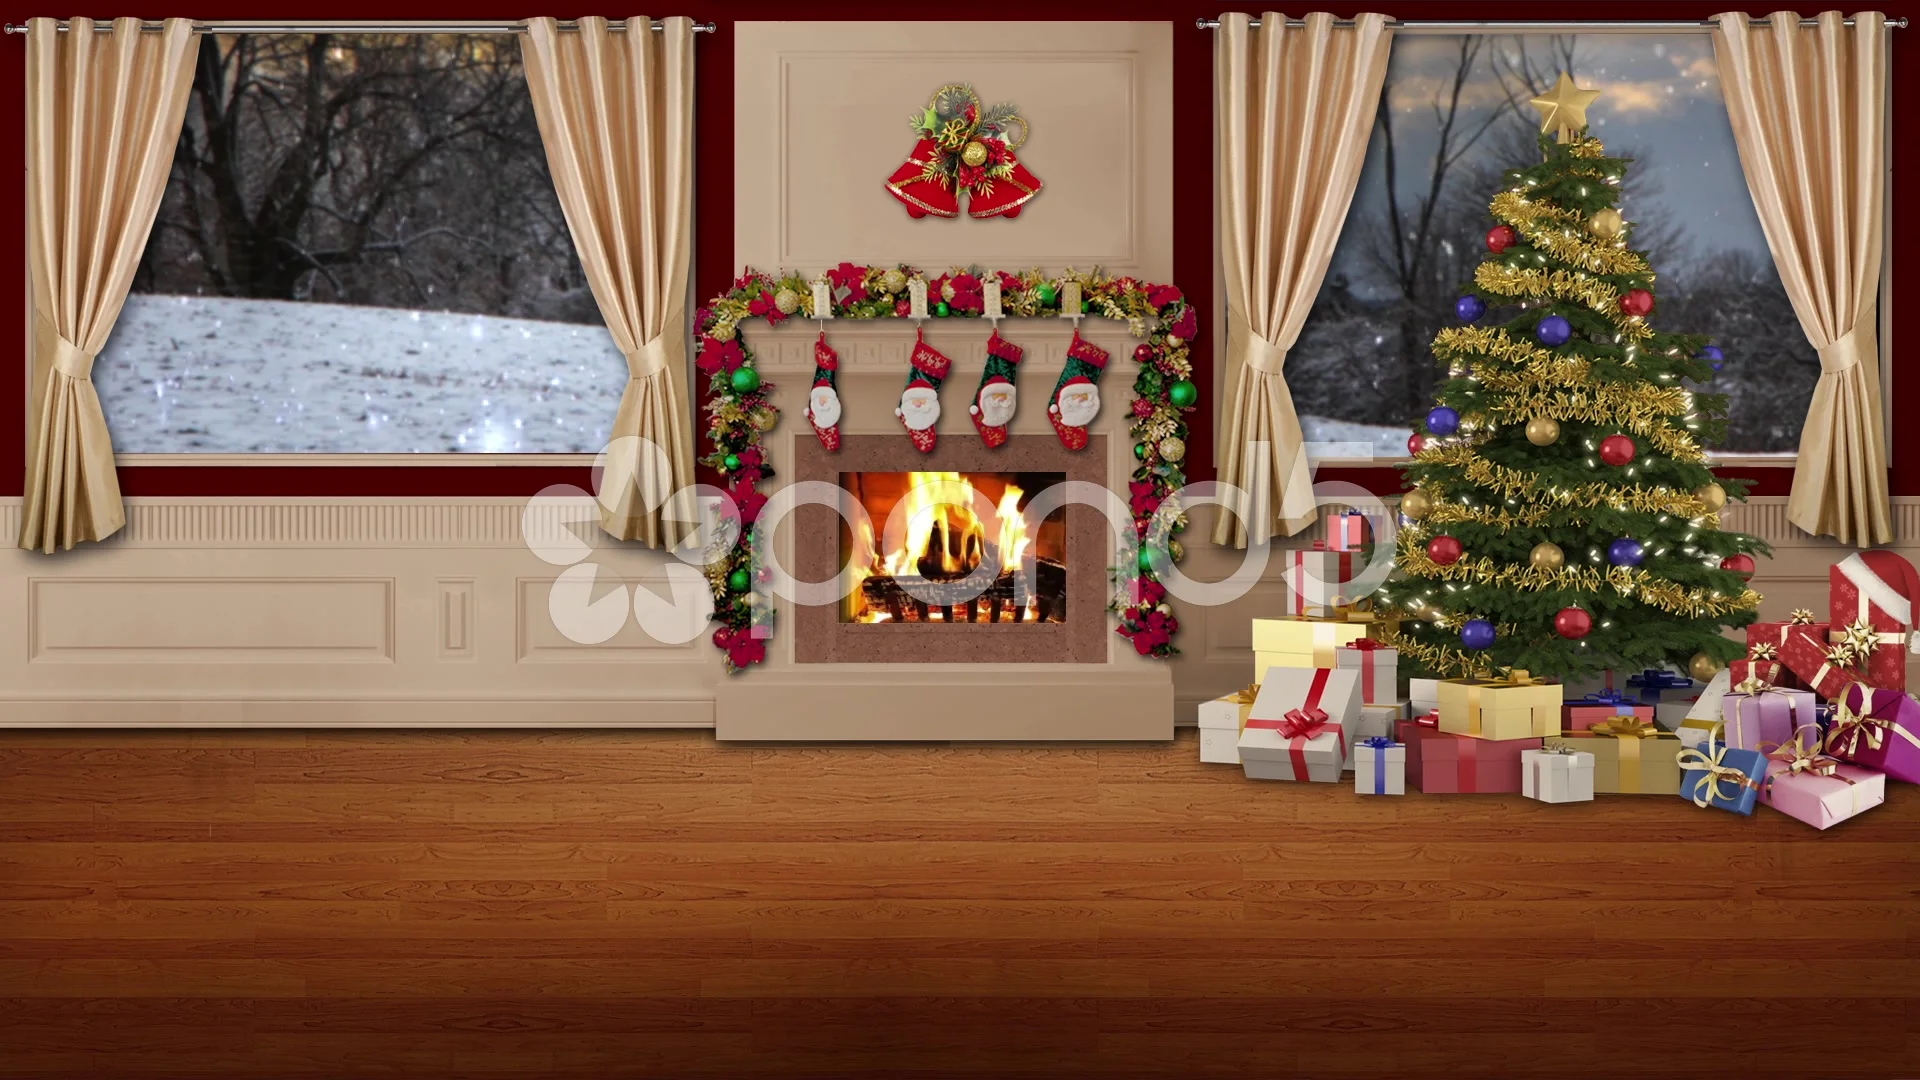 Bộ đồ TV phòng thu Giáng sinh màn hình xanh sẽ làm bạn đắm chìm trong một không gian âm nhạc và ánh sáng đầy cảm hứng trong mùa Giáng sinh. Cùng xem ngay hình ảnh để cảm nhận sự tuyệt vời này nhé!